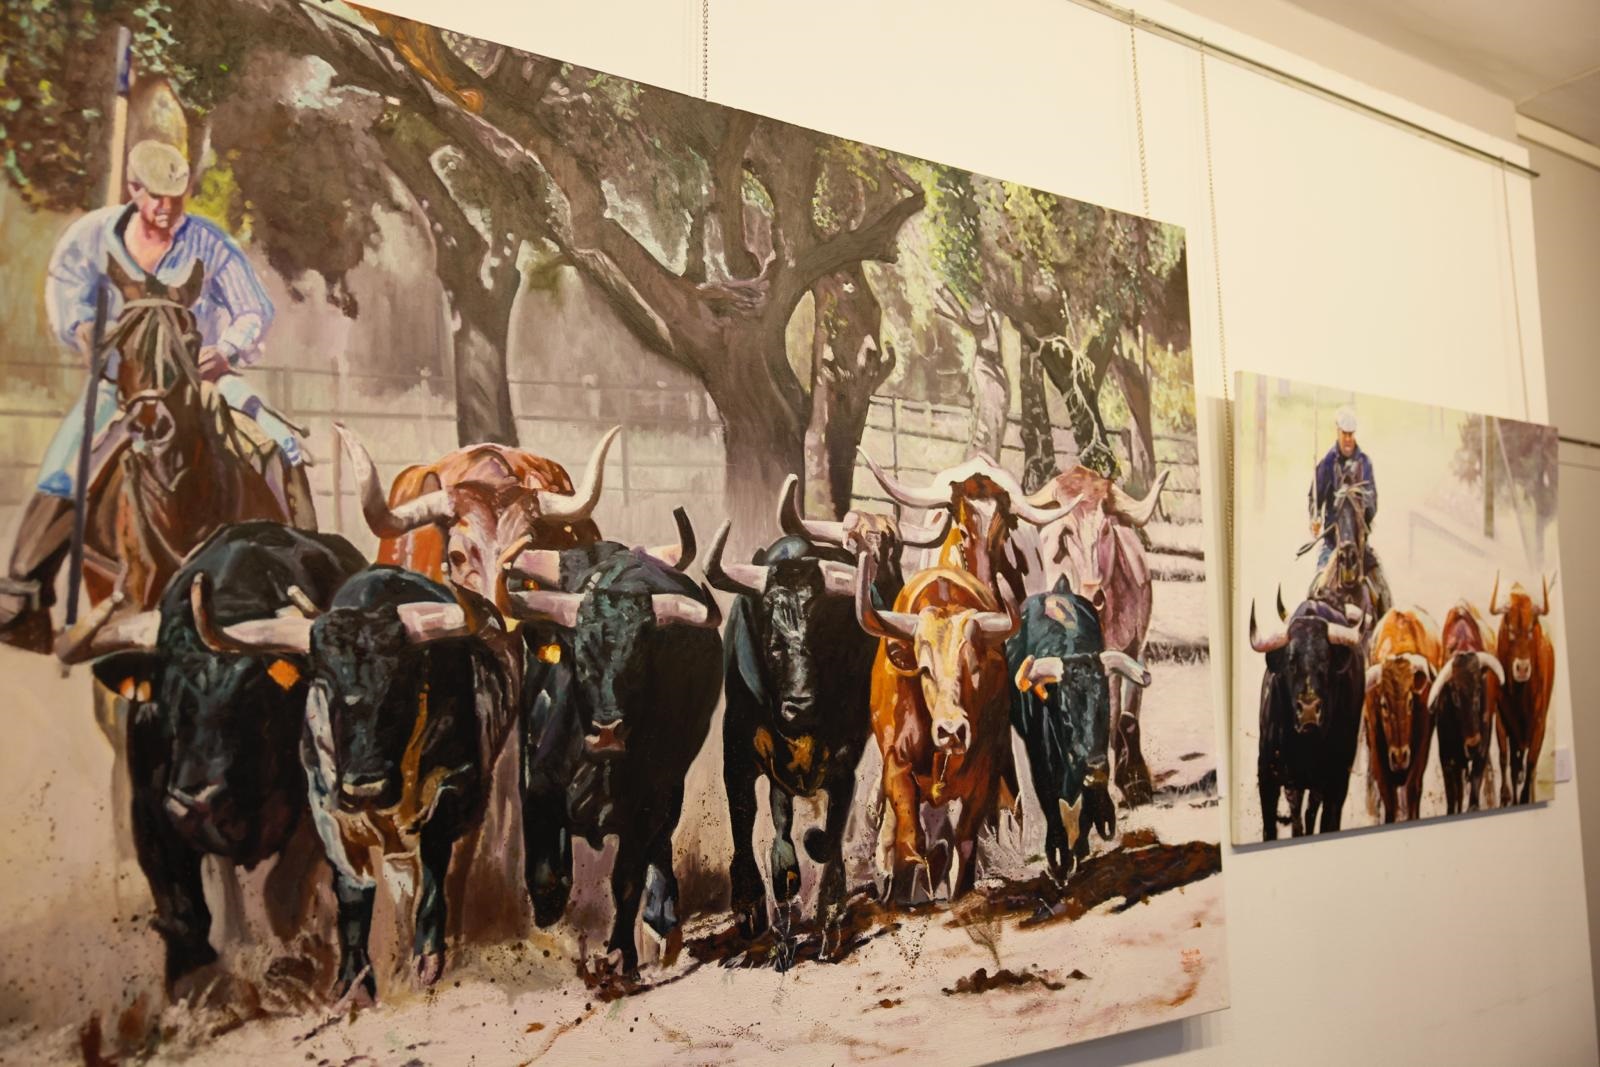 Exposiciones del Centro Cultural Picasso Colmenar Viejo en febrero: ‘Rules’ y ‘Un paseo por la tauromaquia’